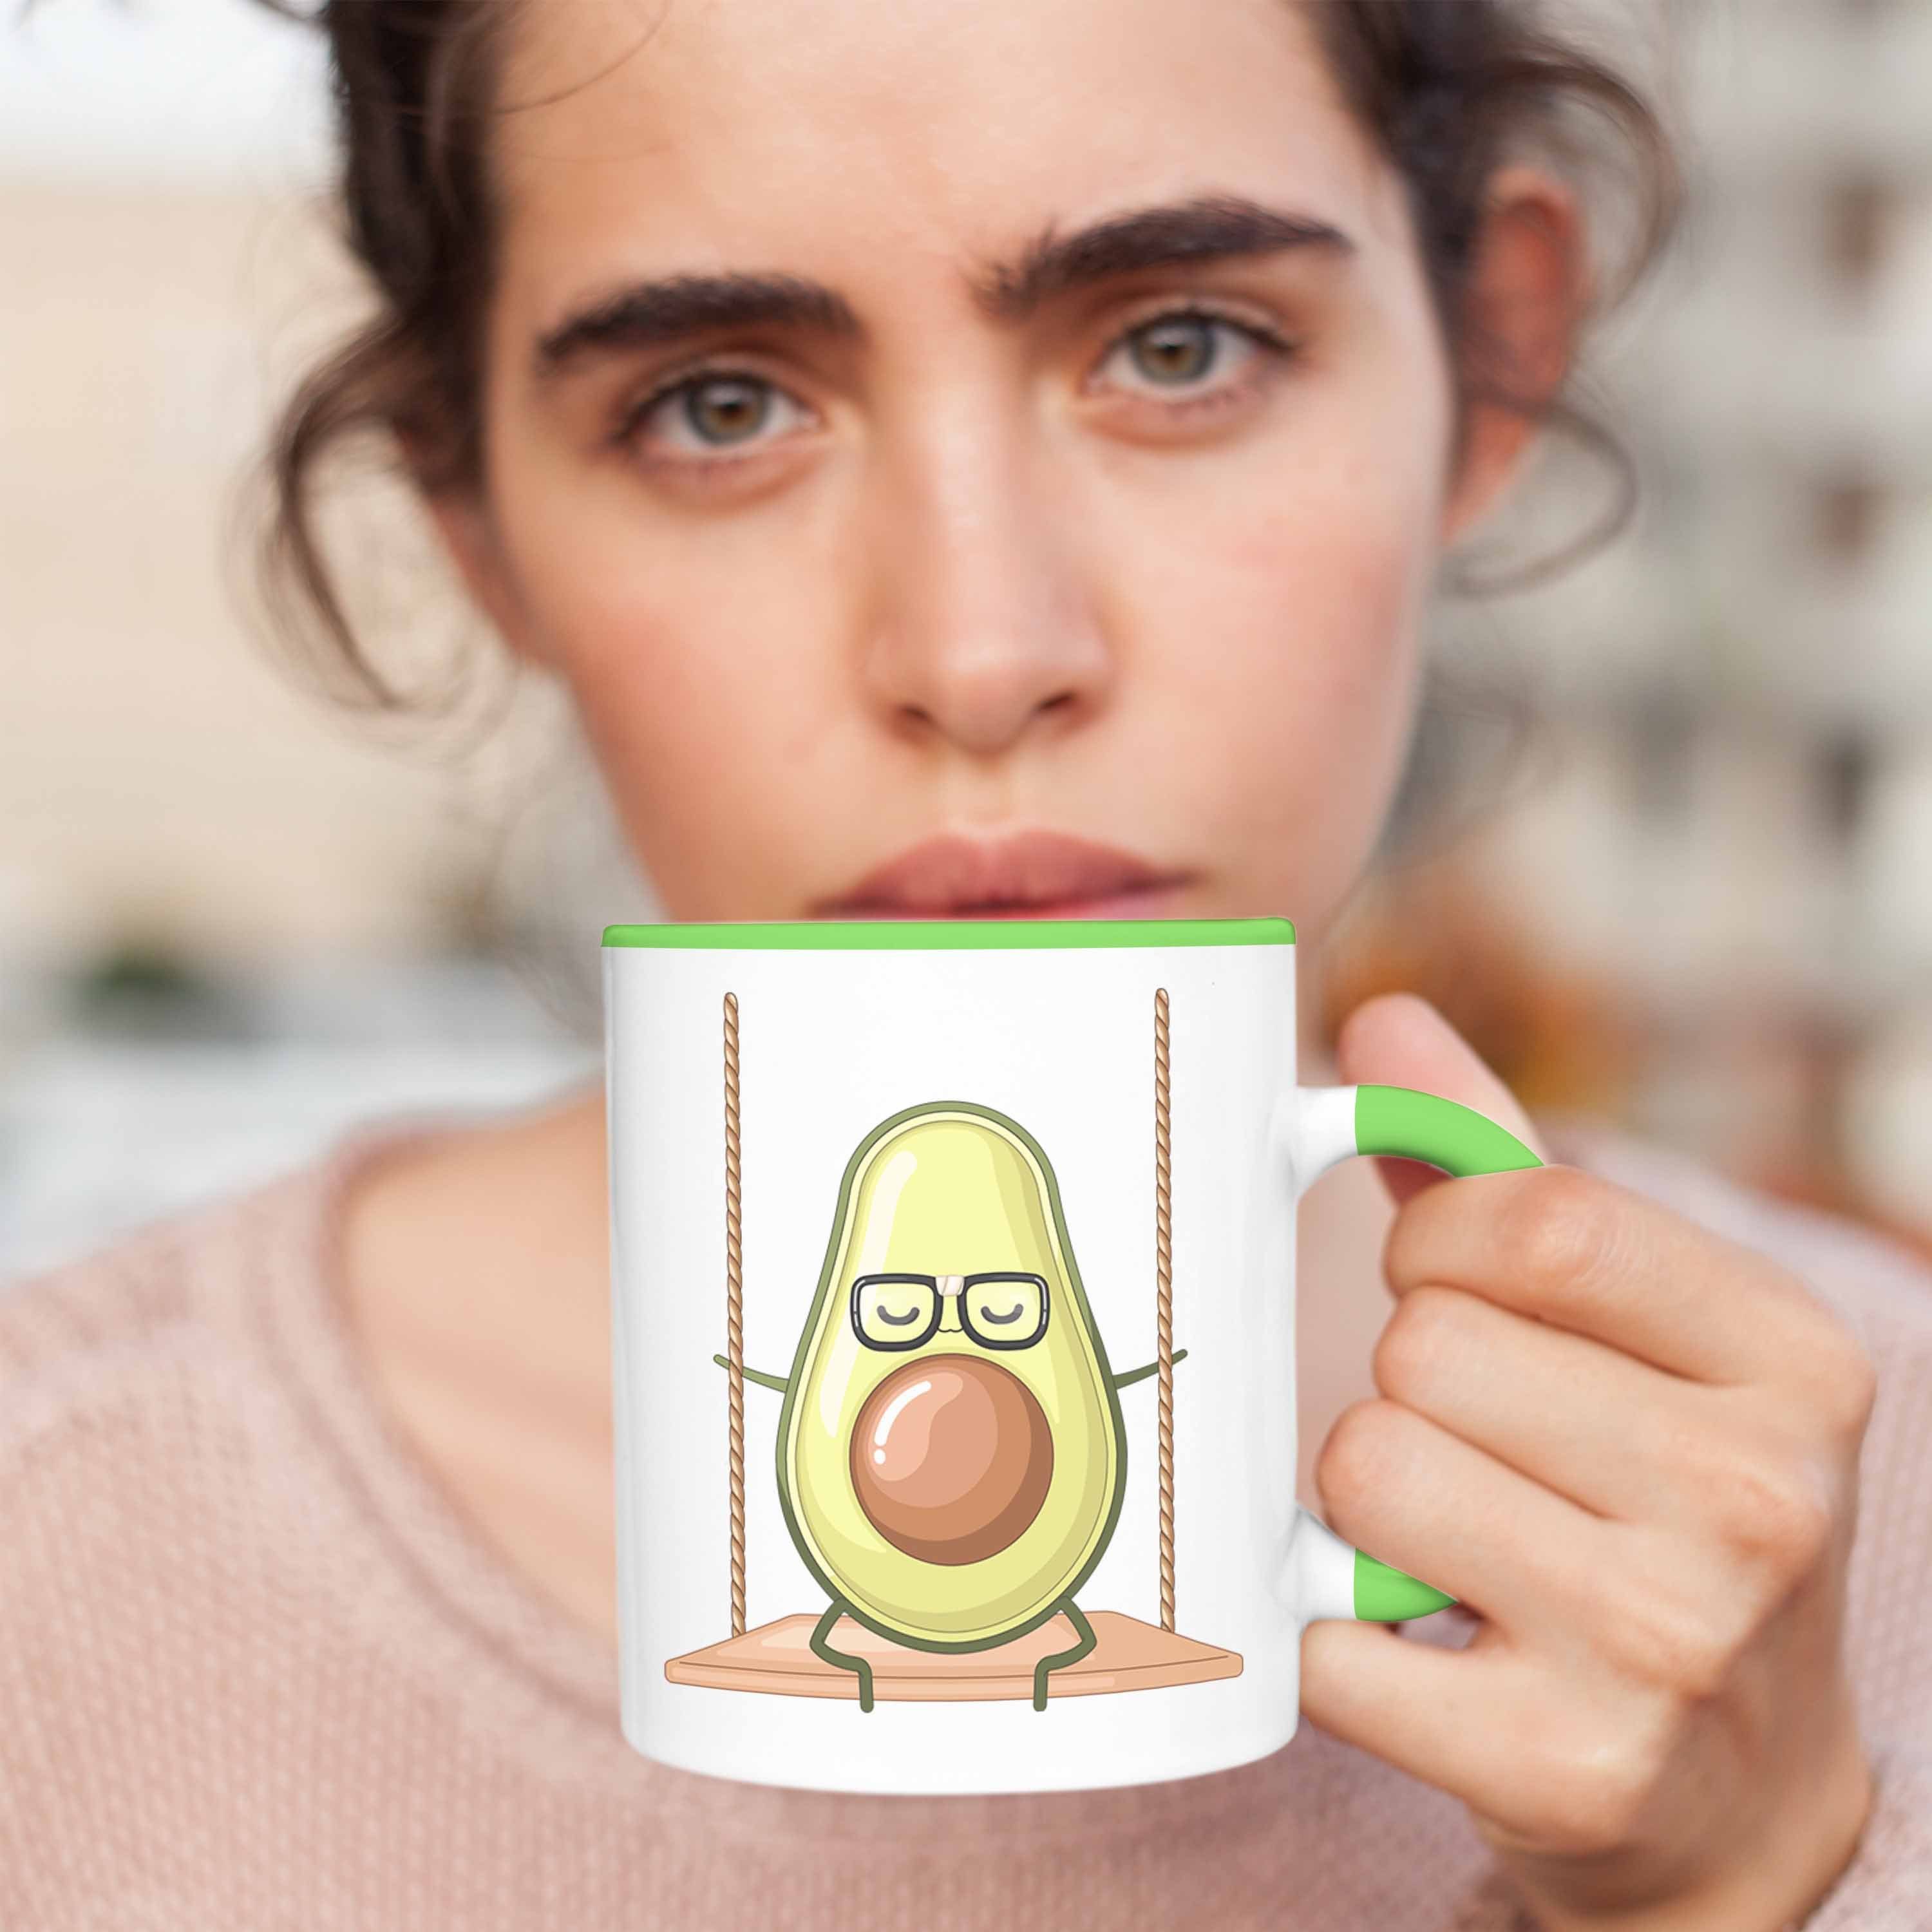 Originelle Geschenkidee Trendation Lustige Tasse Tasse mit Avocado-Motiv - Grün Avocado- für